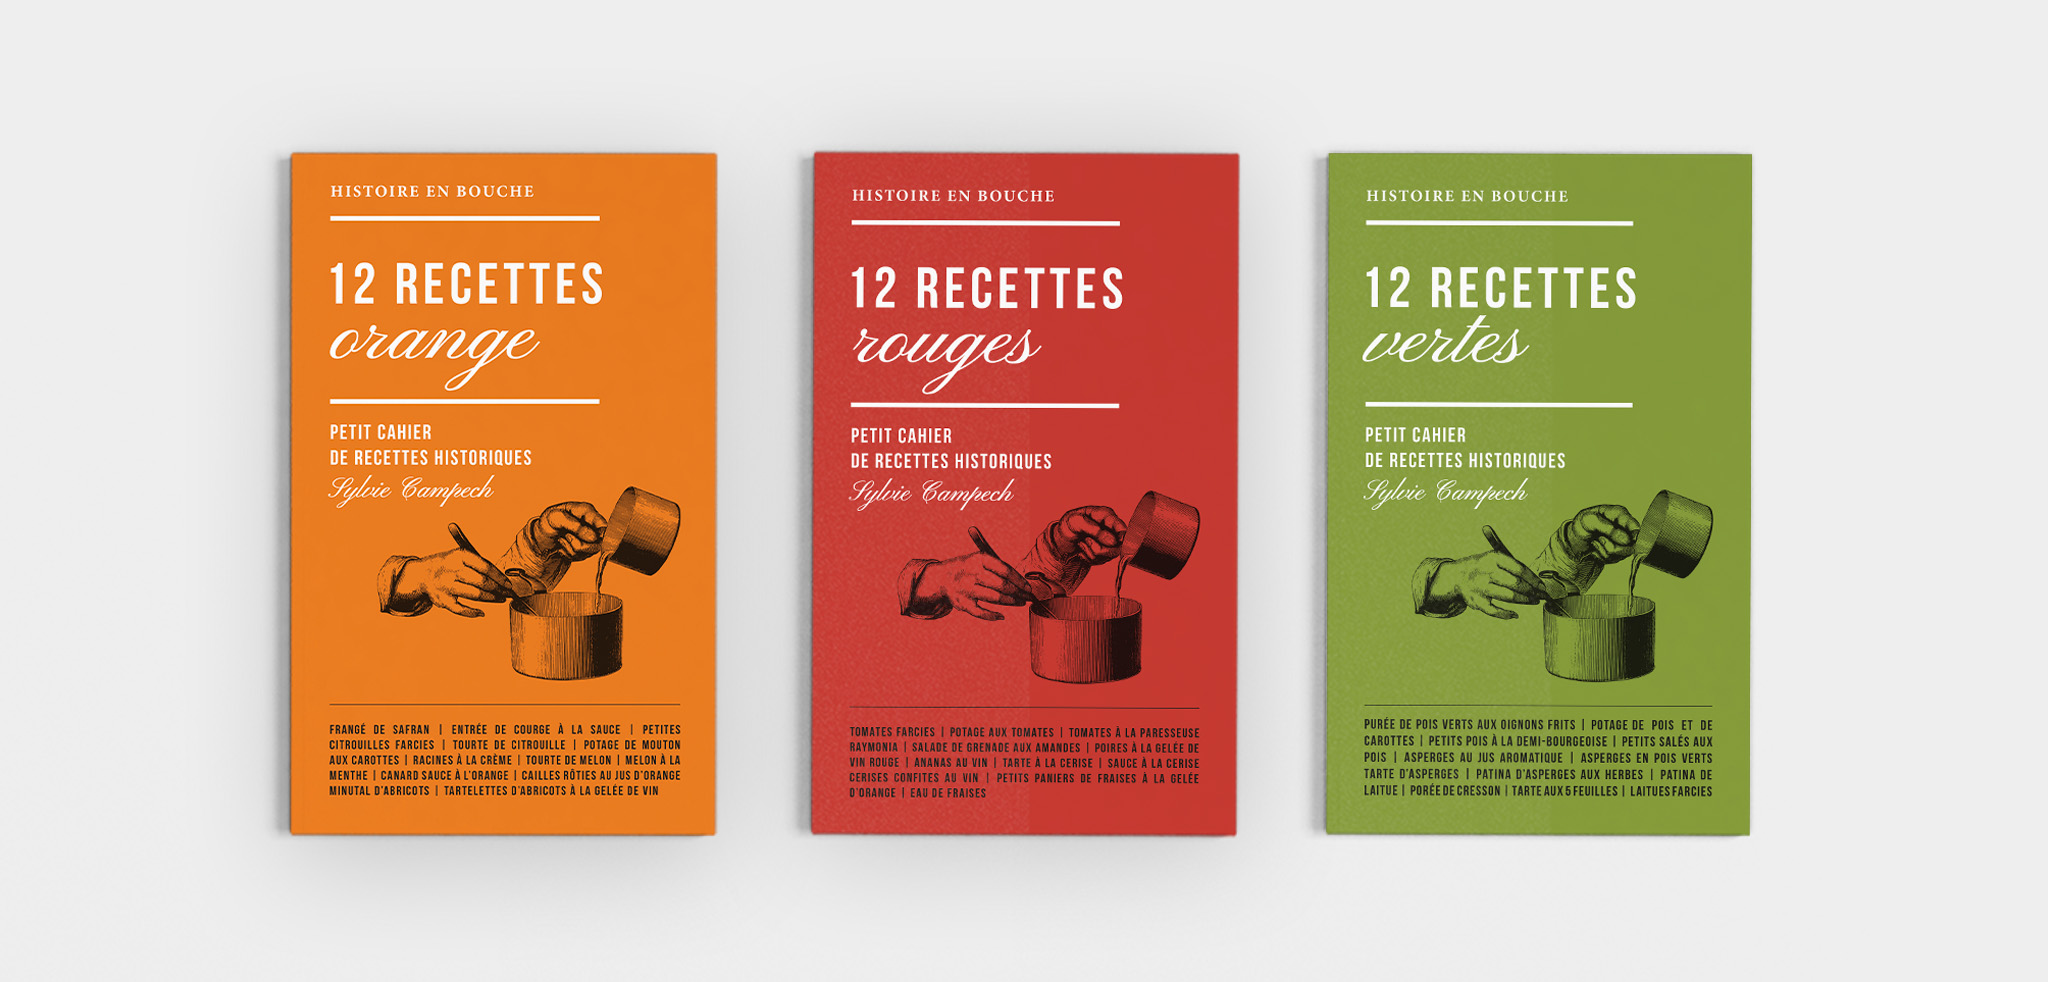 autograff-design-graphique-graphiste-toulouse-france-edition-les-causeries-culinaires-recettes-cuisine-historique-serie-livres